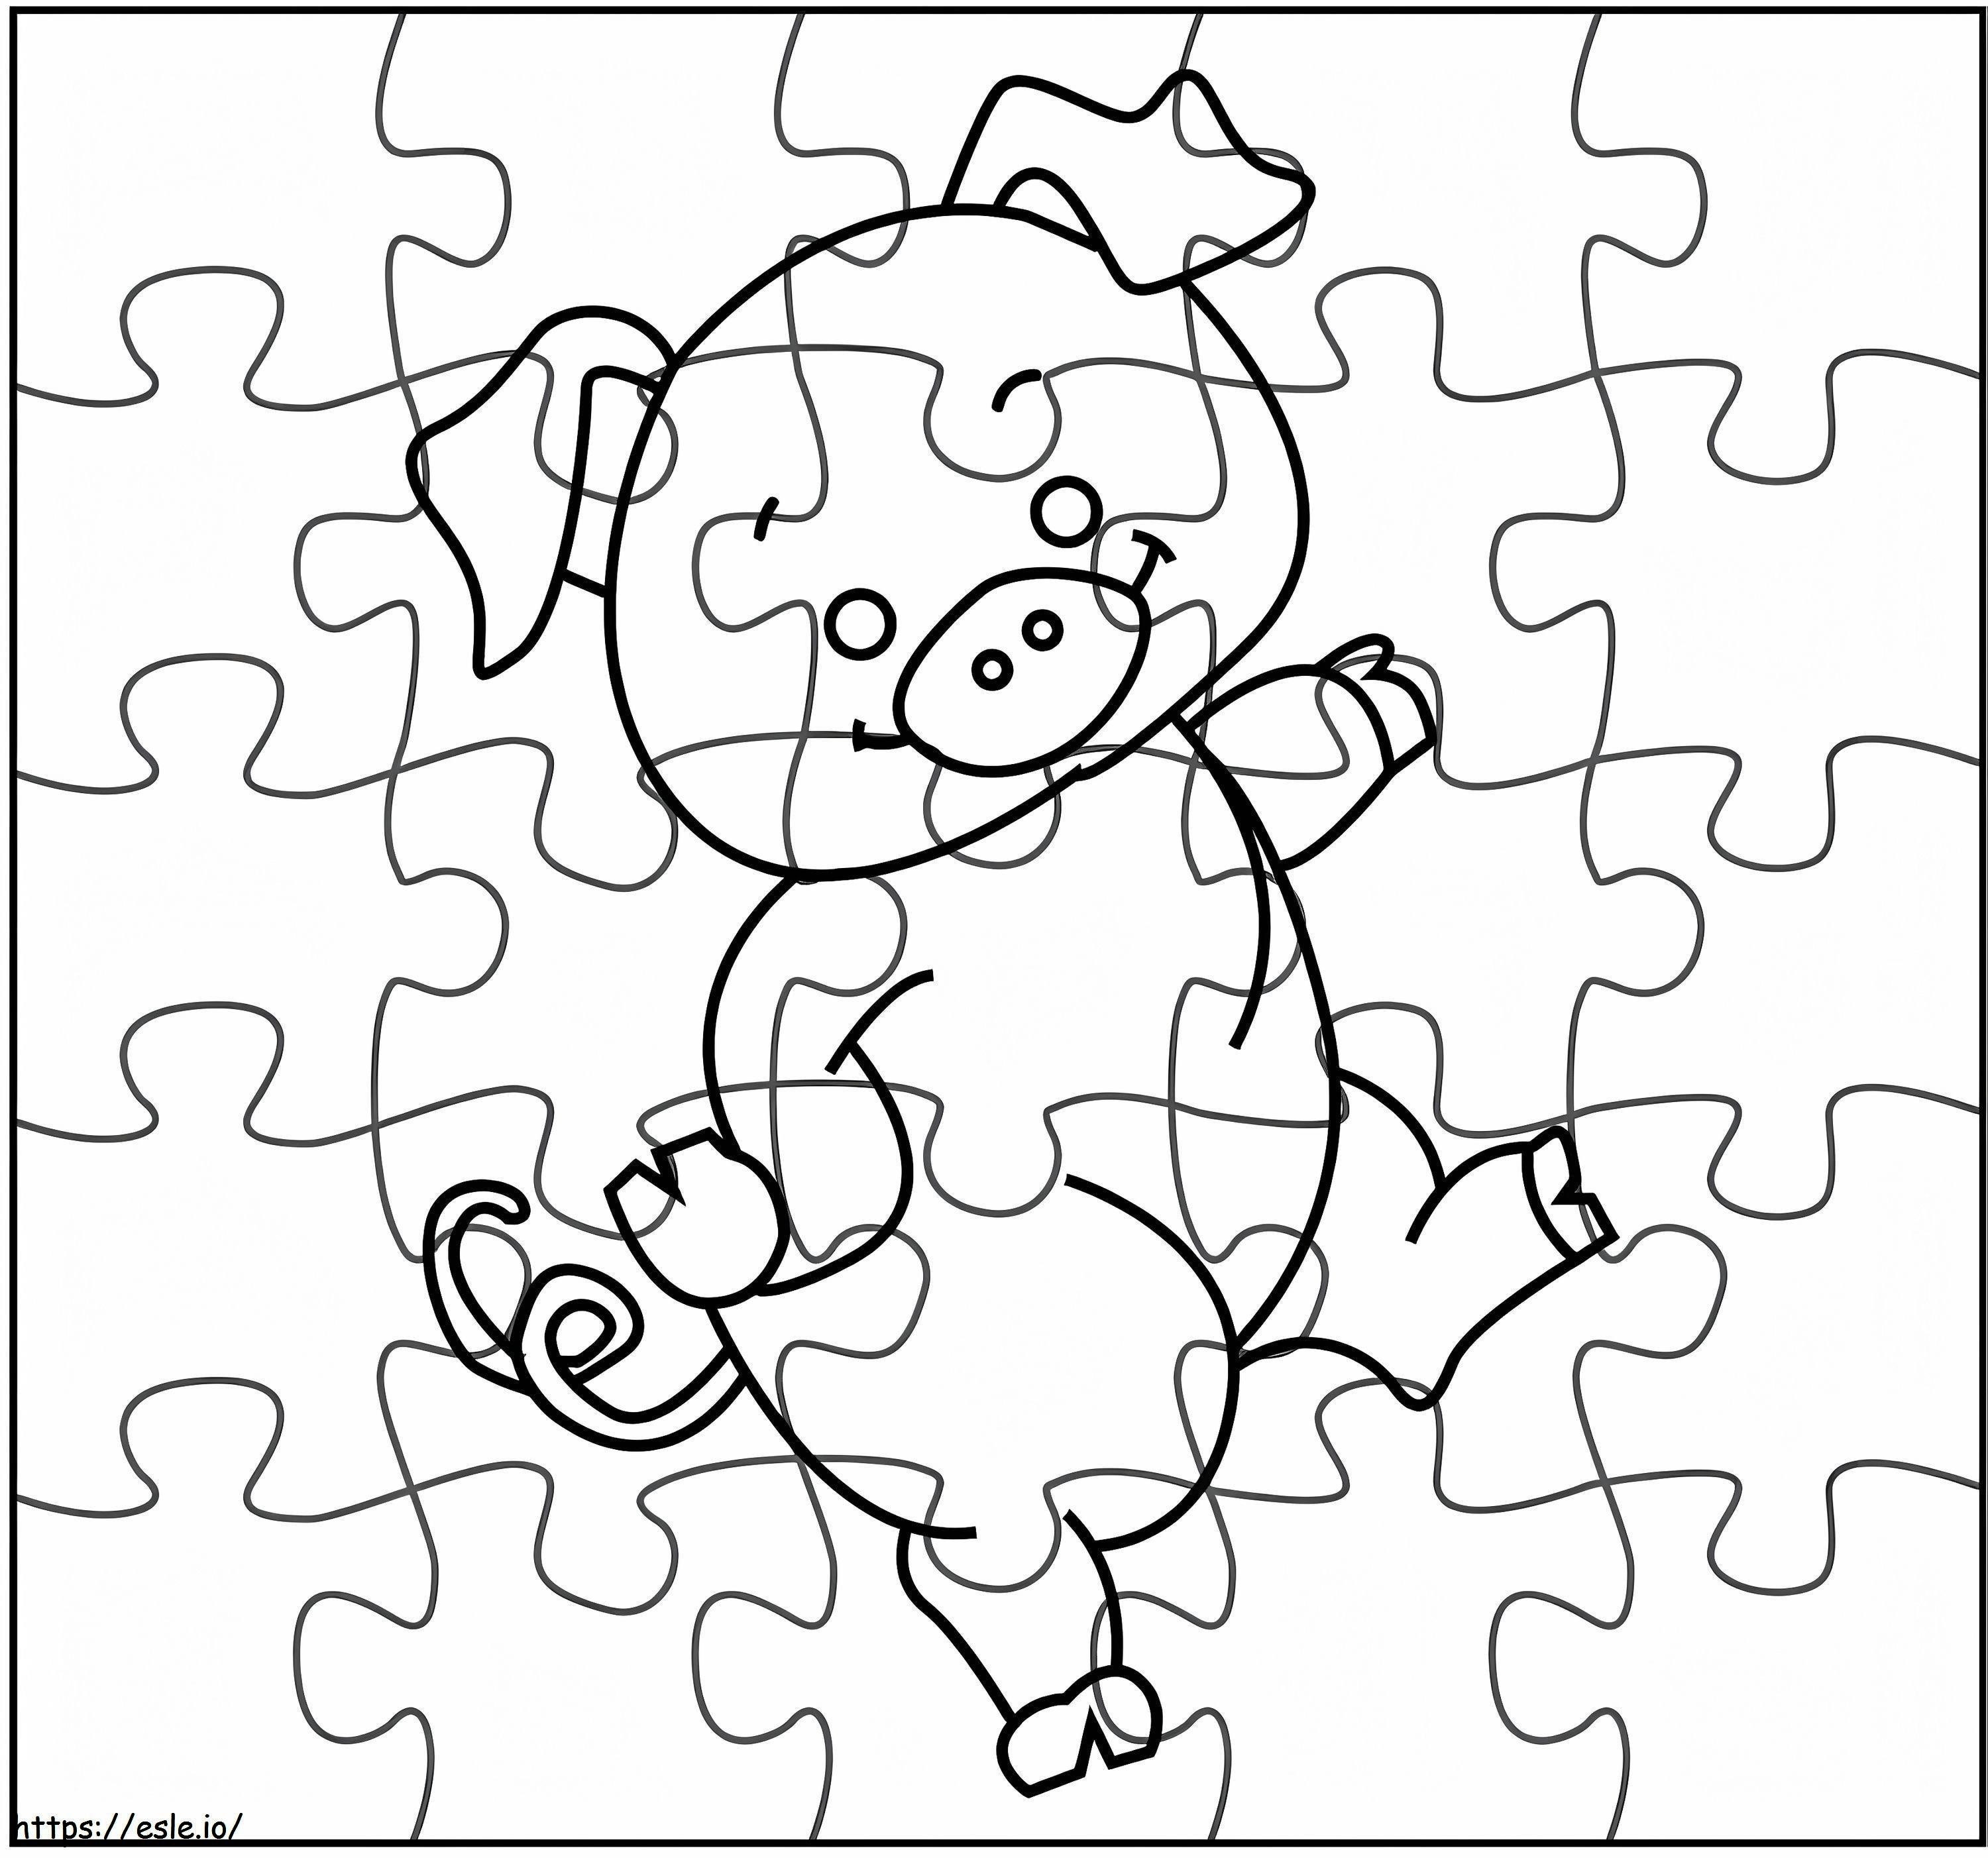 Schwein-Puzzle ausmalbilder